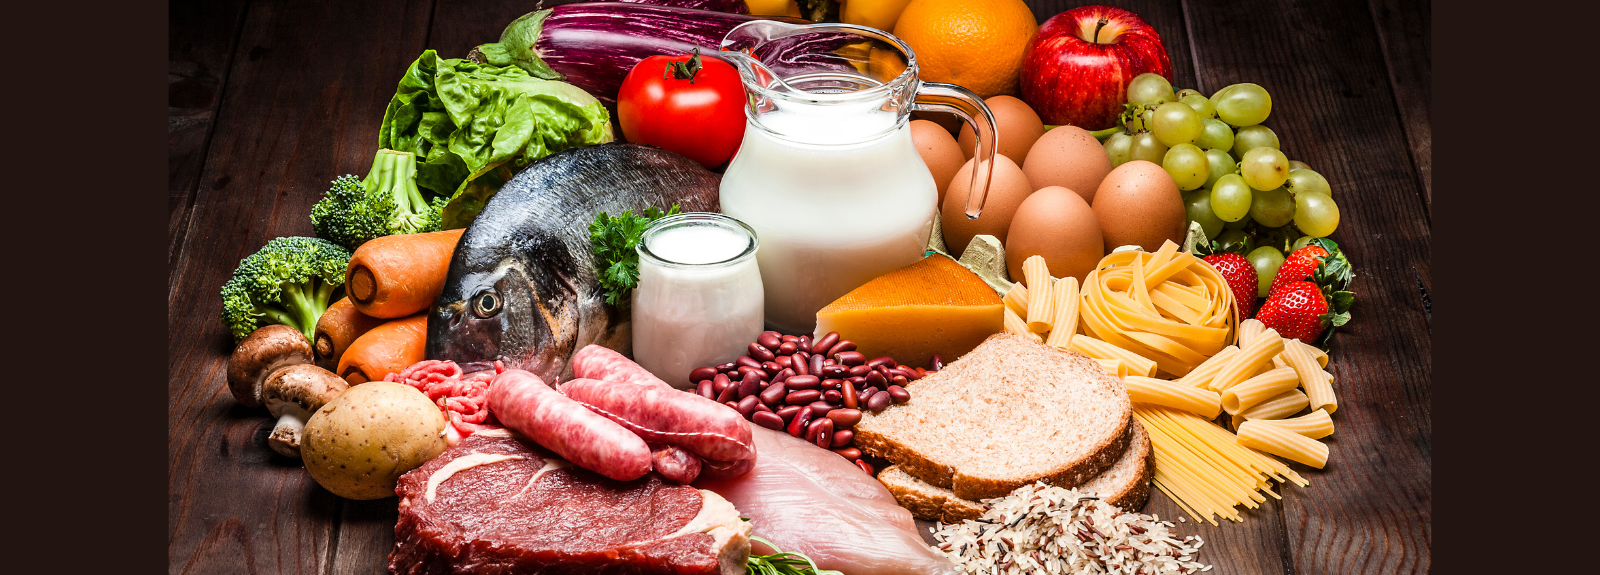 Viande, pain, lait, fromage, fruits et légumes composent cette tablée illustrant chaque groupe alimentaire 